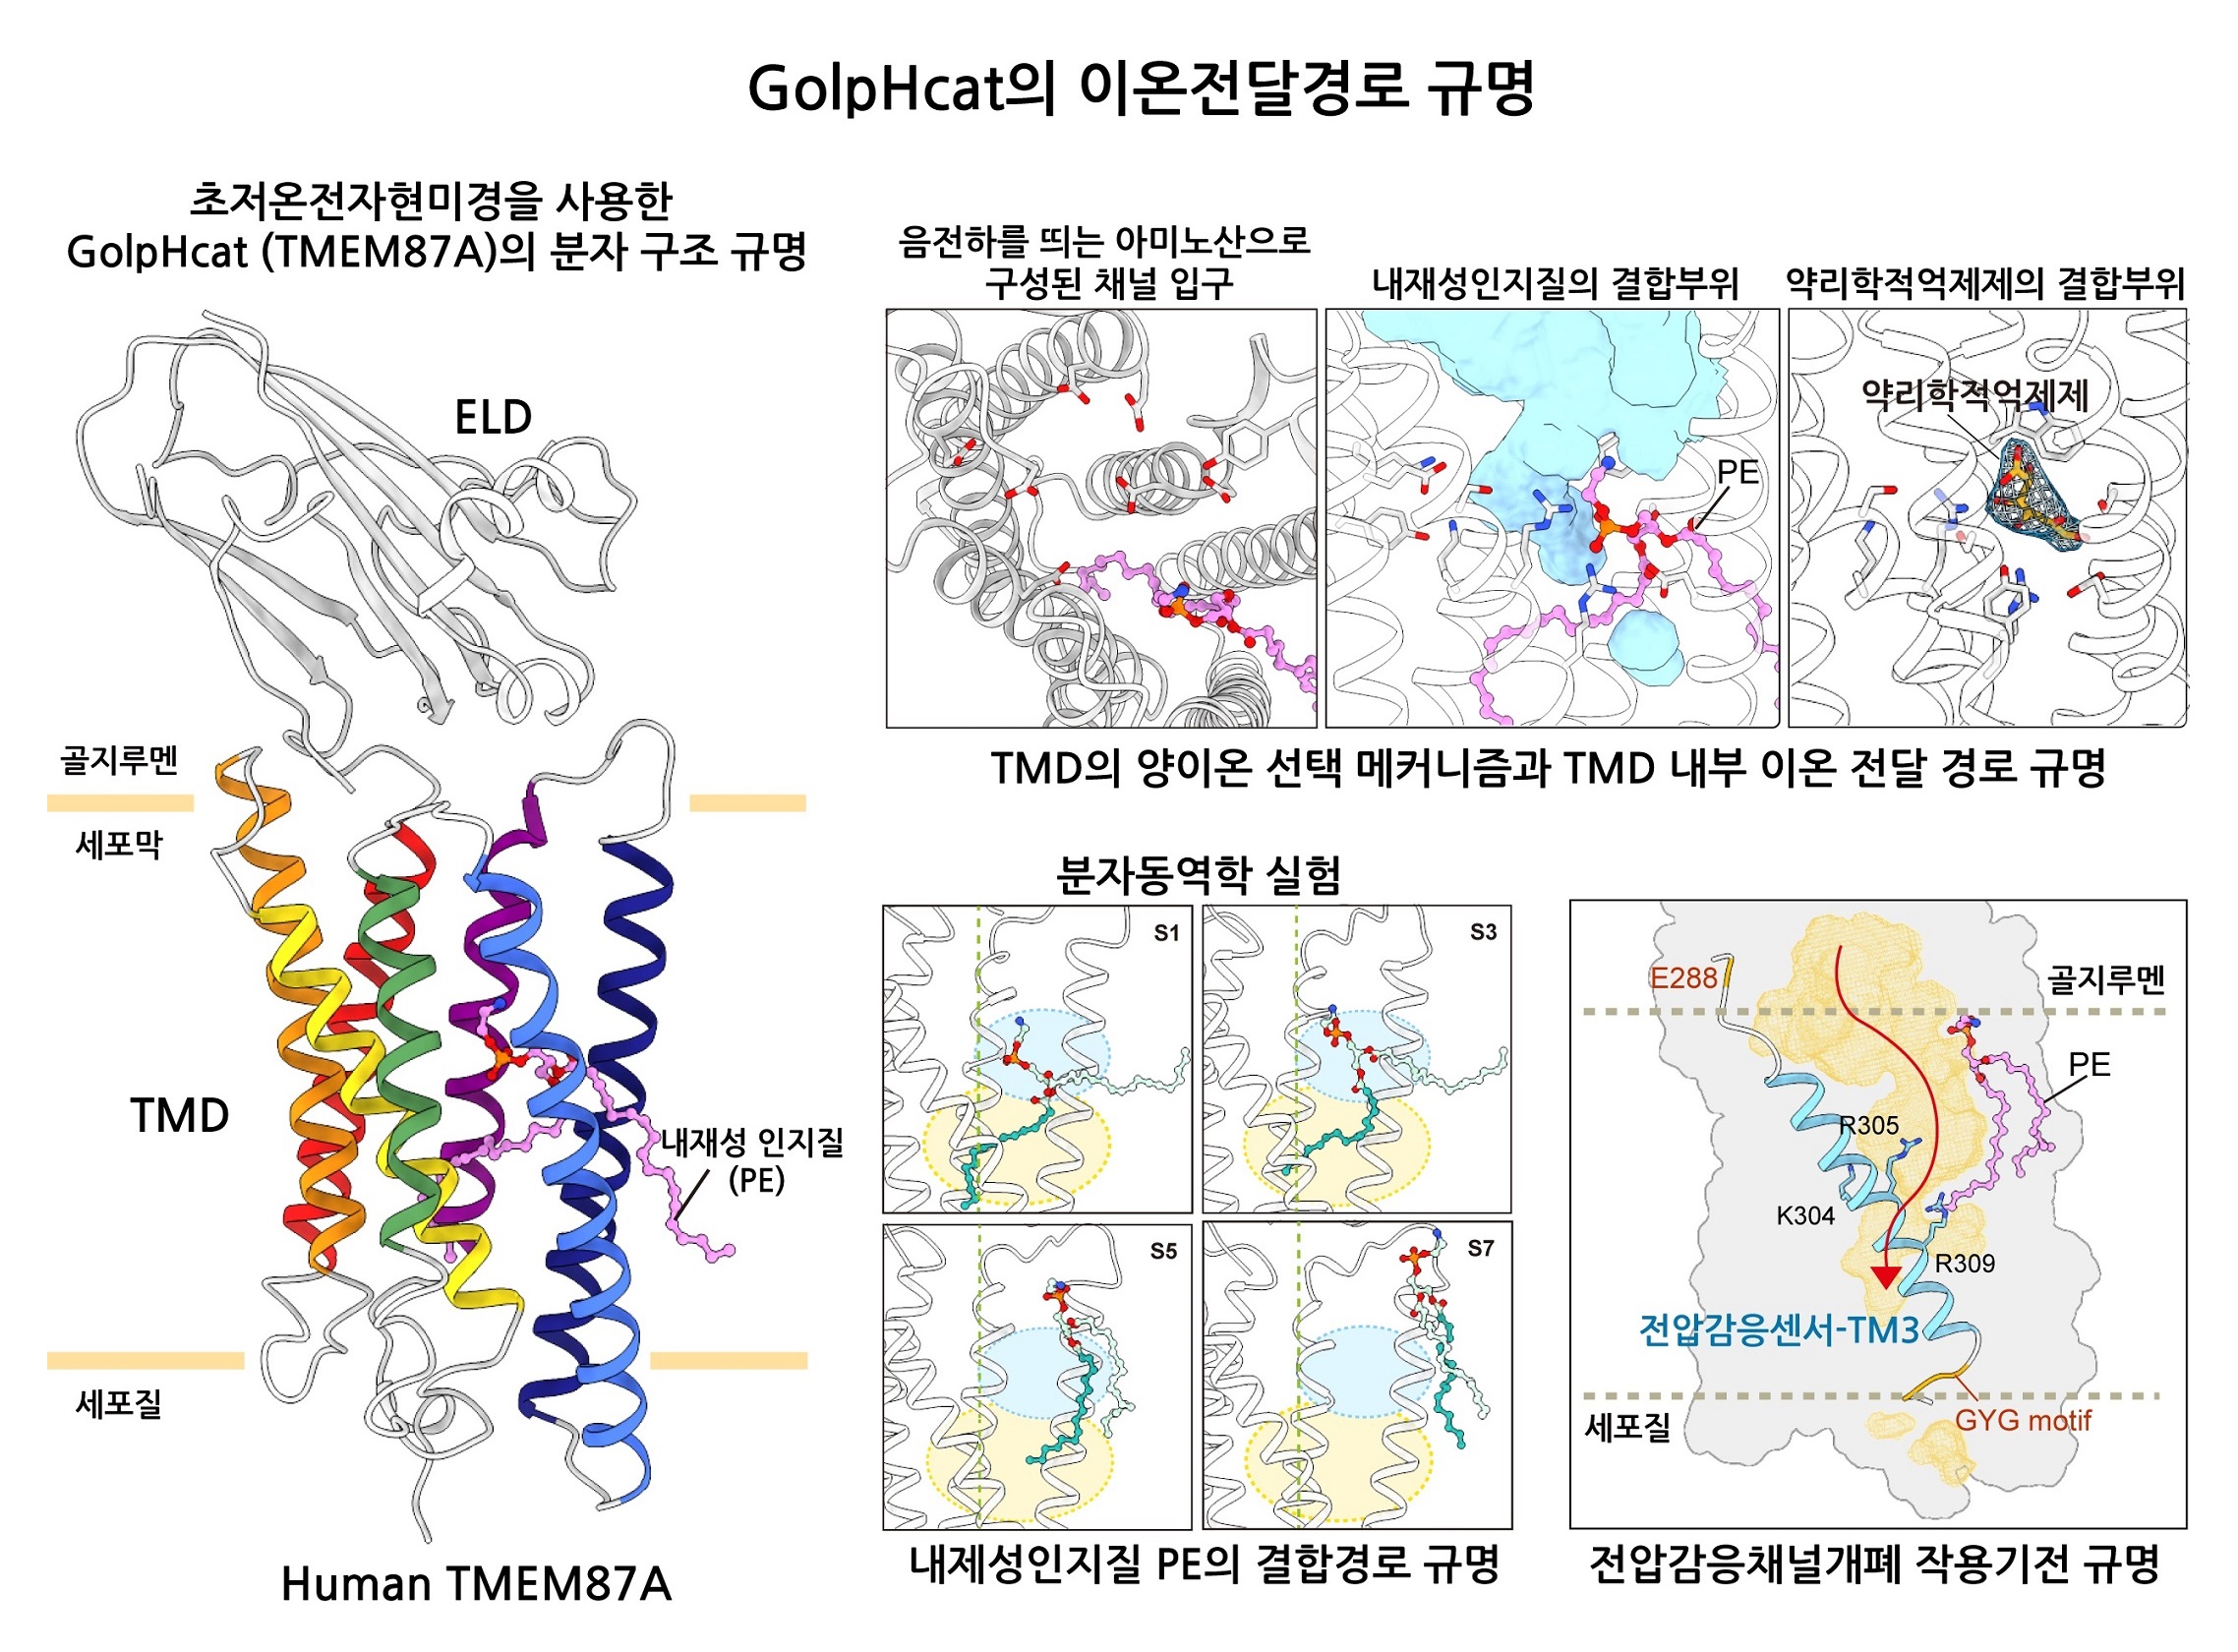 [그림 1] GolpHCat의 분자구조연구에 대한 모식도